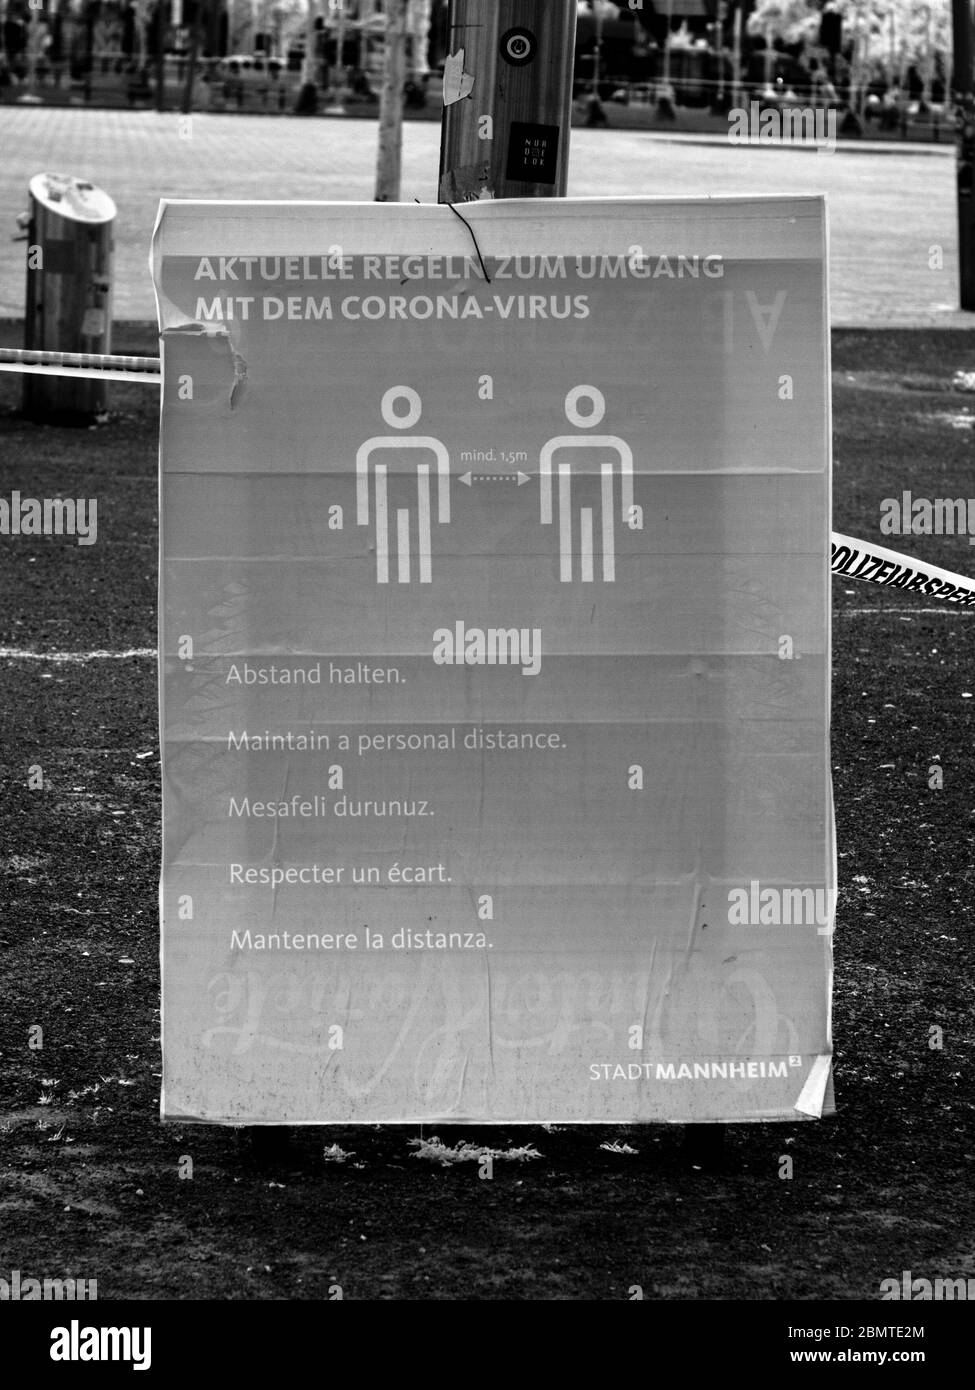 Plakat zur sozialen Distanzierung in mehreren Sprachen, Stadt Mannheim/Deutschland Stockfoto